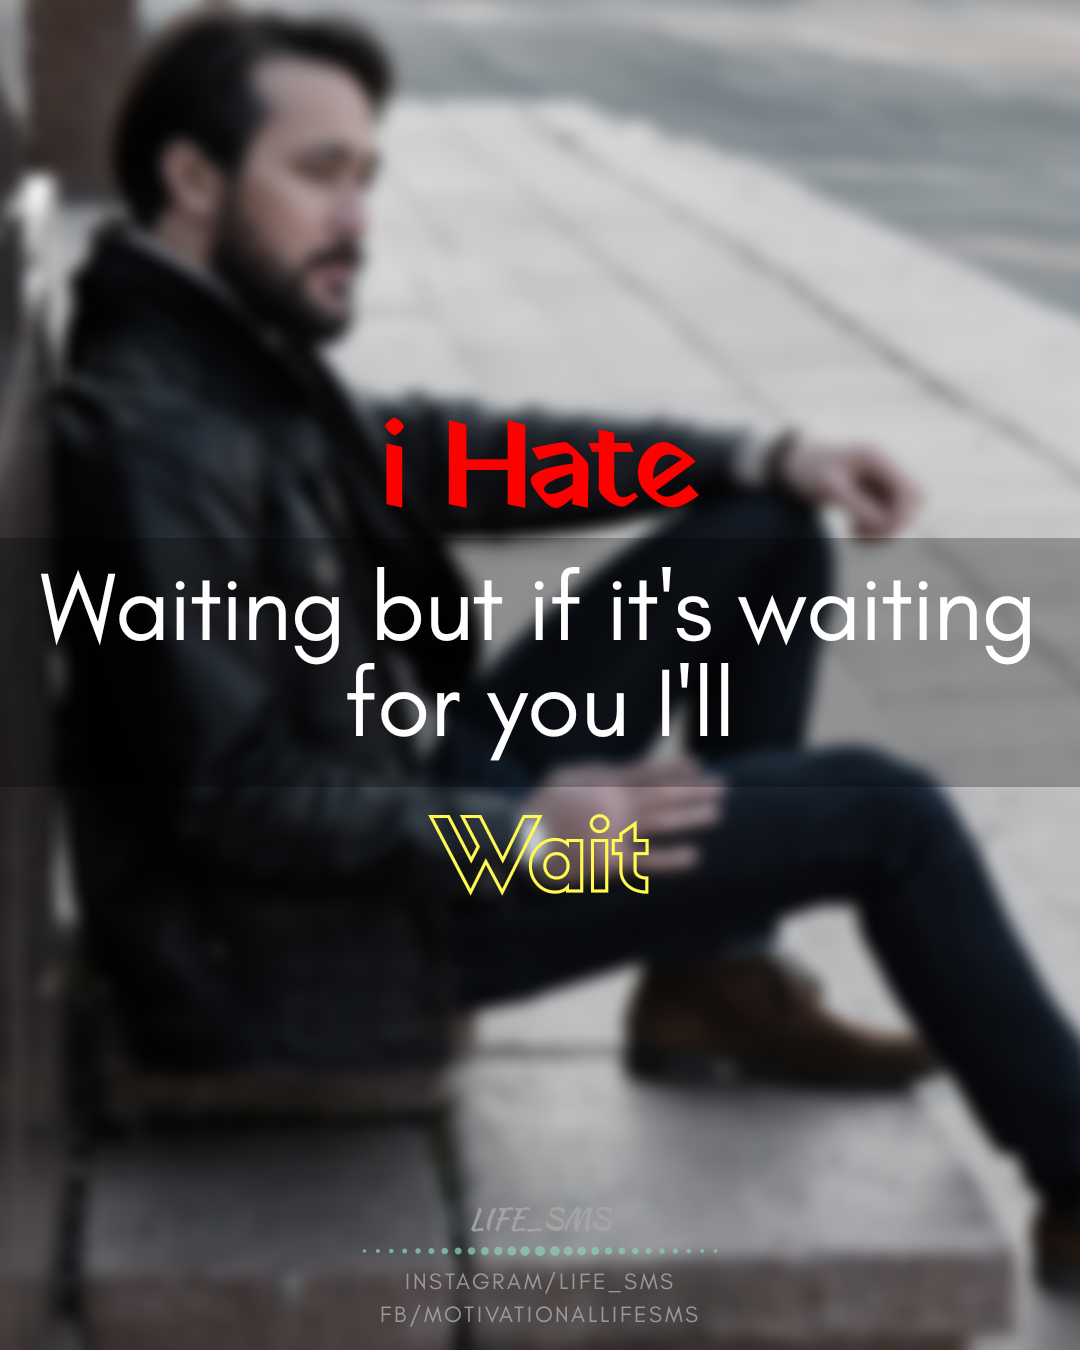 I hate waiting